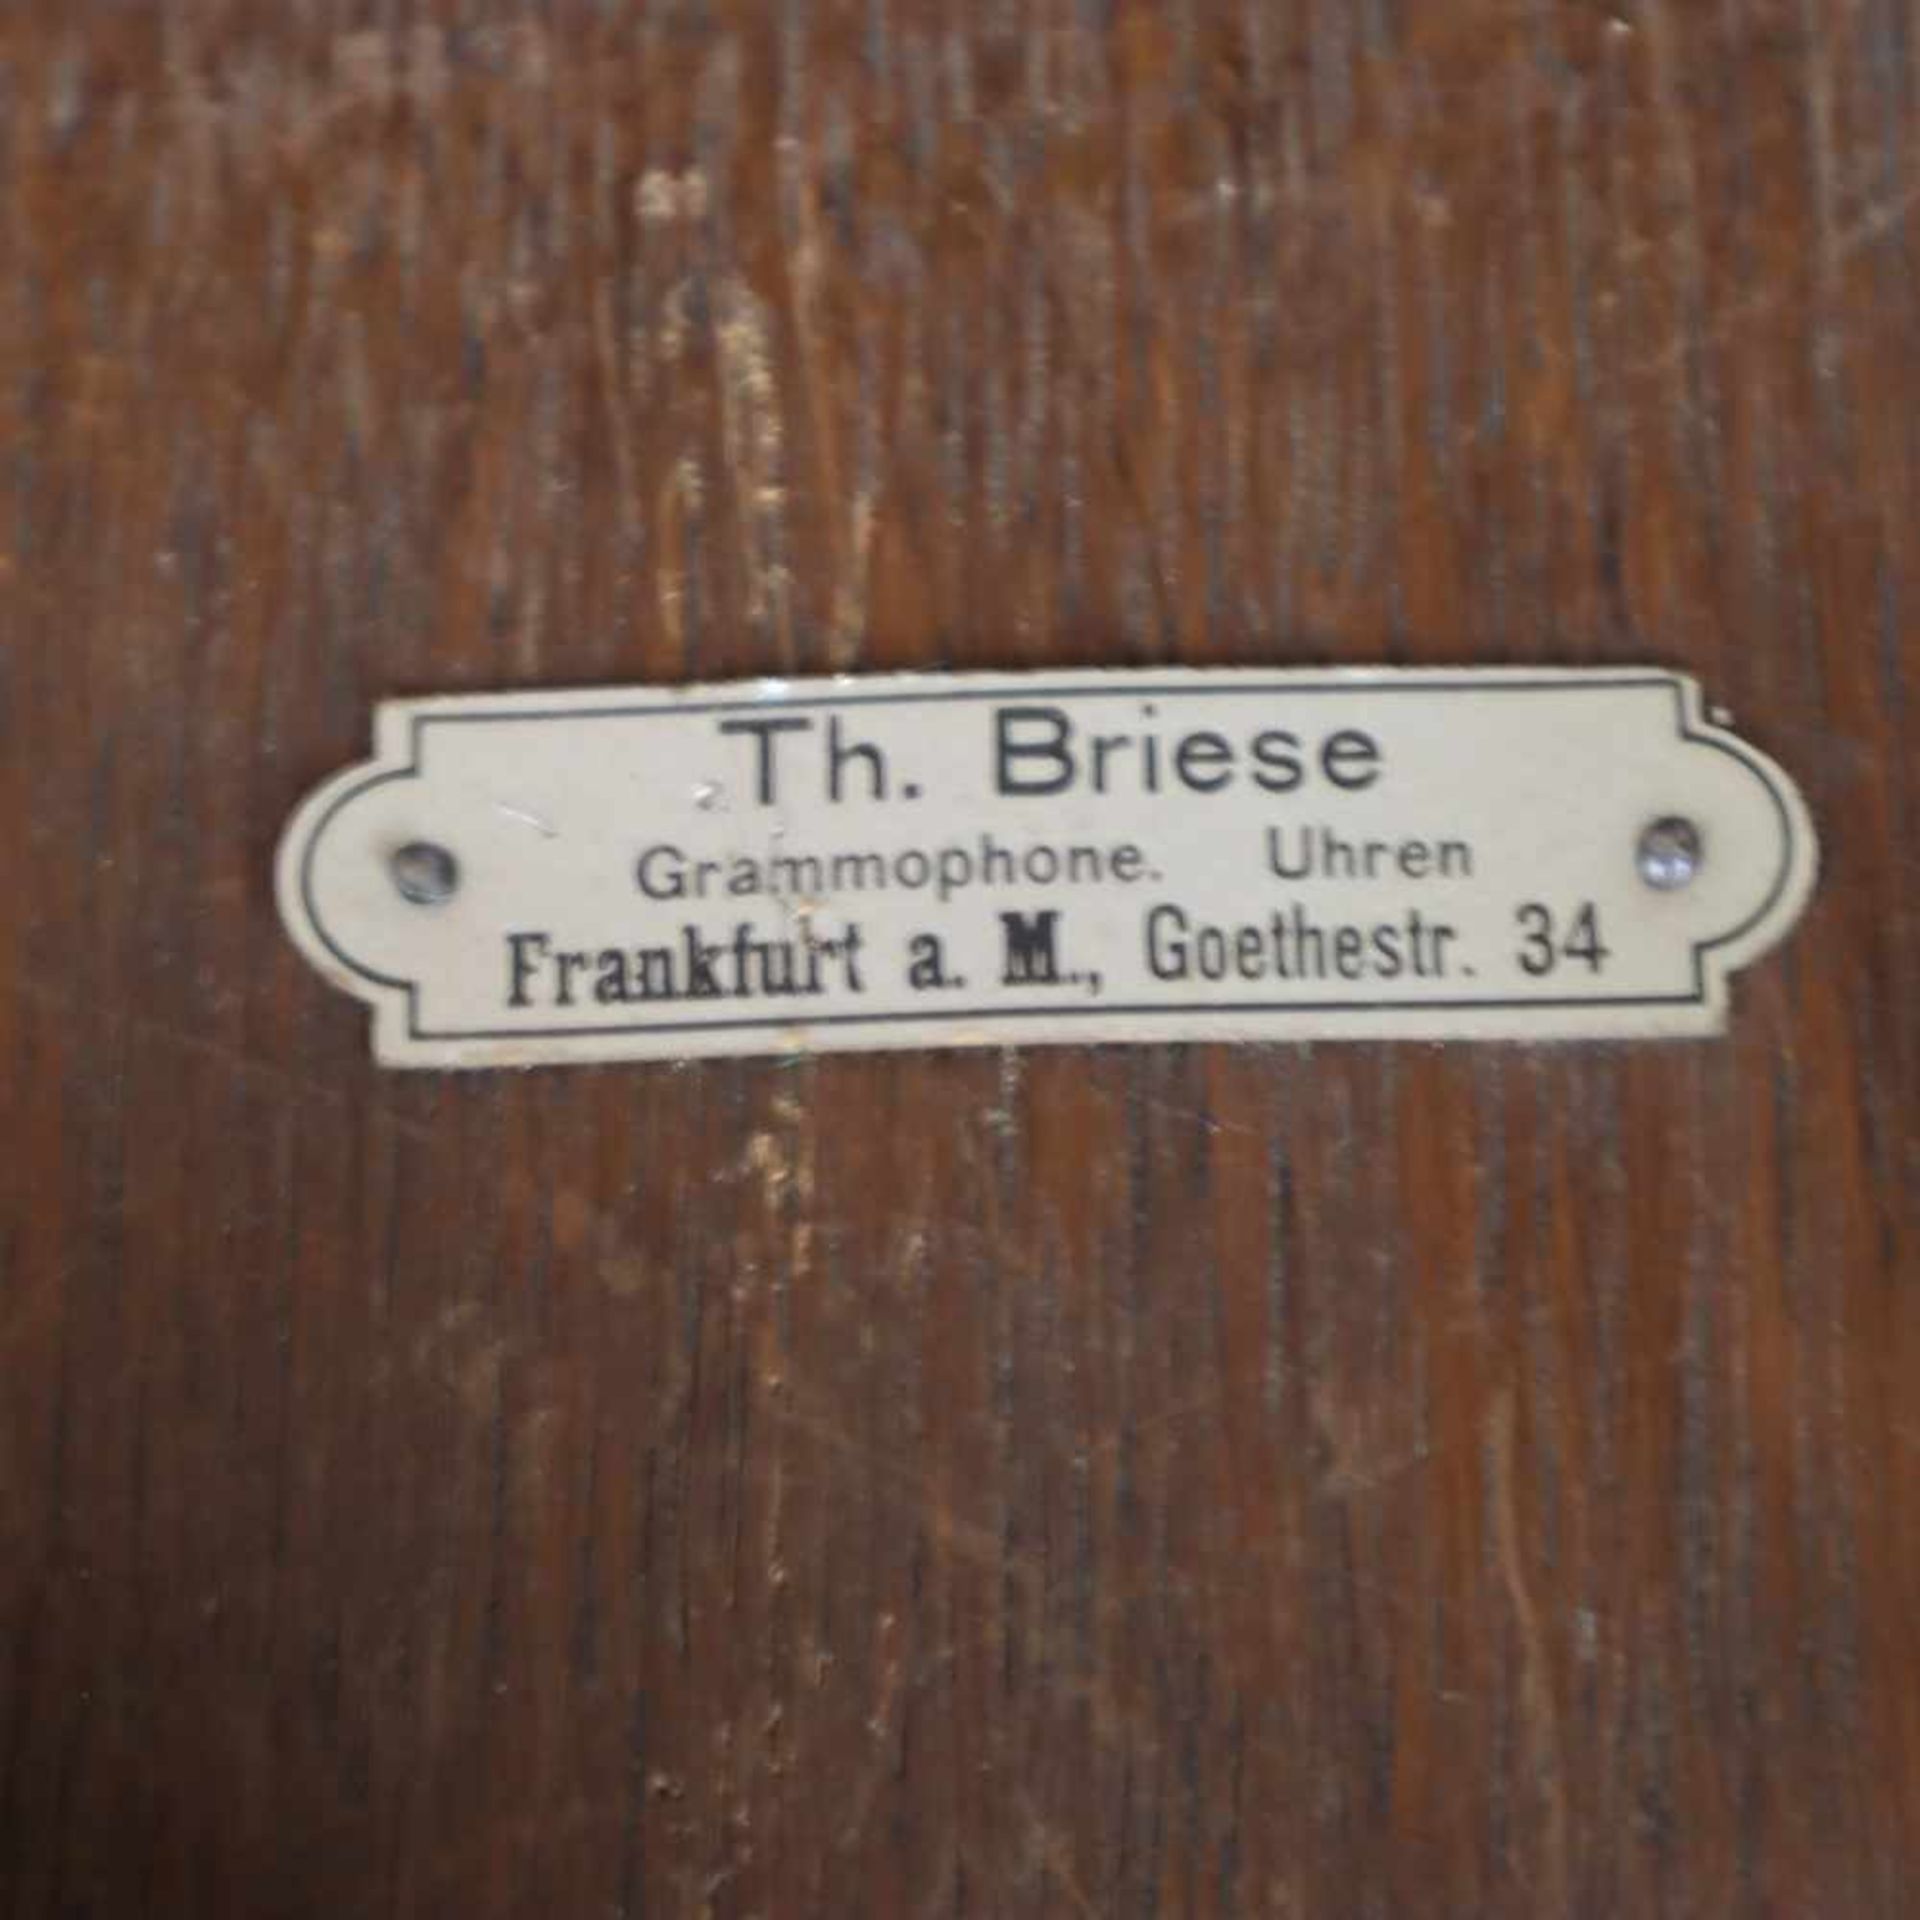 Tisch-Grammophon - Holzgehäuse, Händlerplakette "Th. Briese. Grammophone. Uhren. Frankfurt a.M., - Bild 4 aus 8